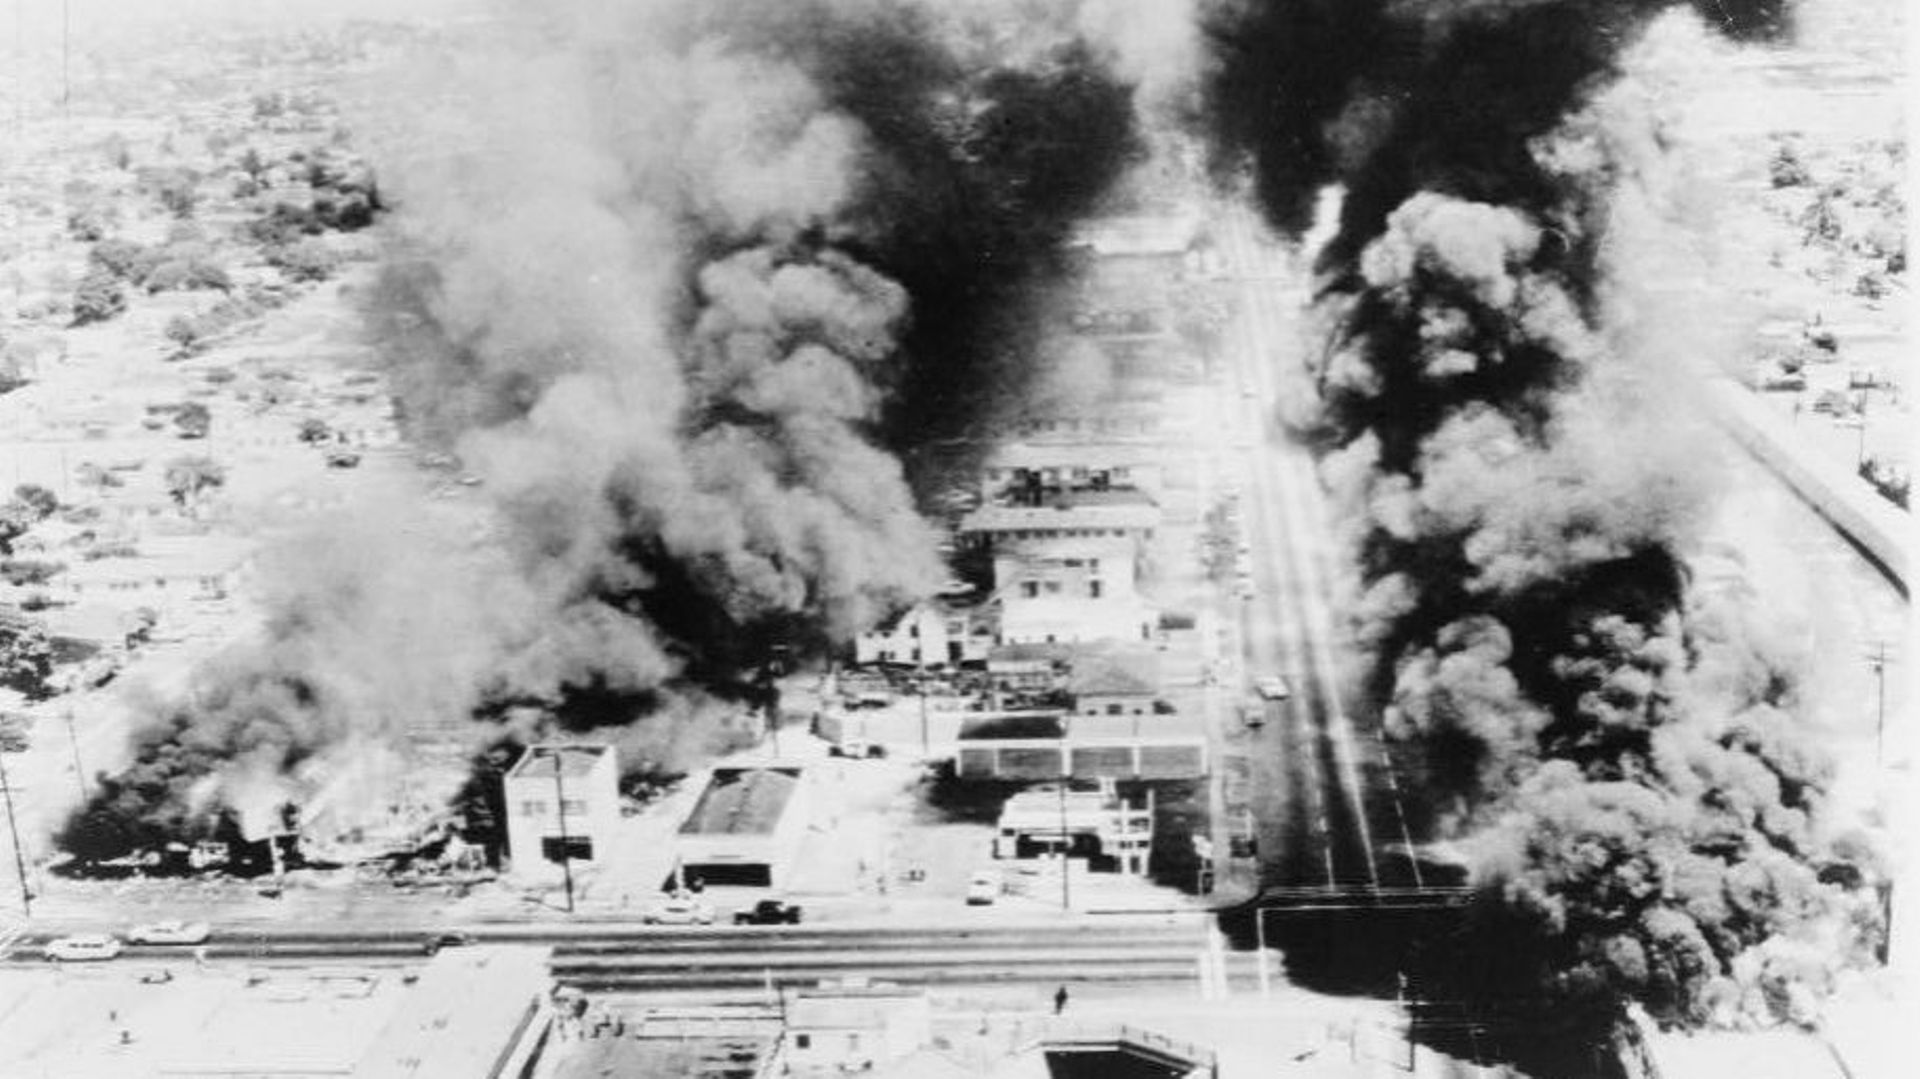 Des bâtiments en feu lors des émeutes de Watts en 1965